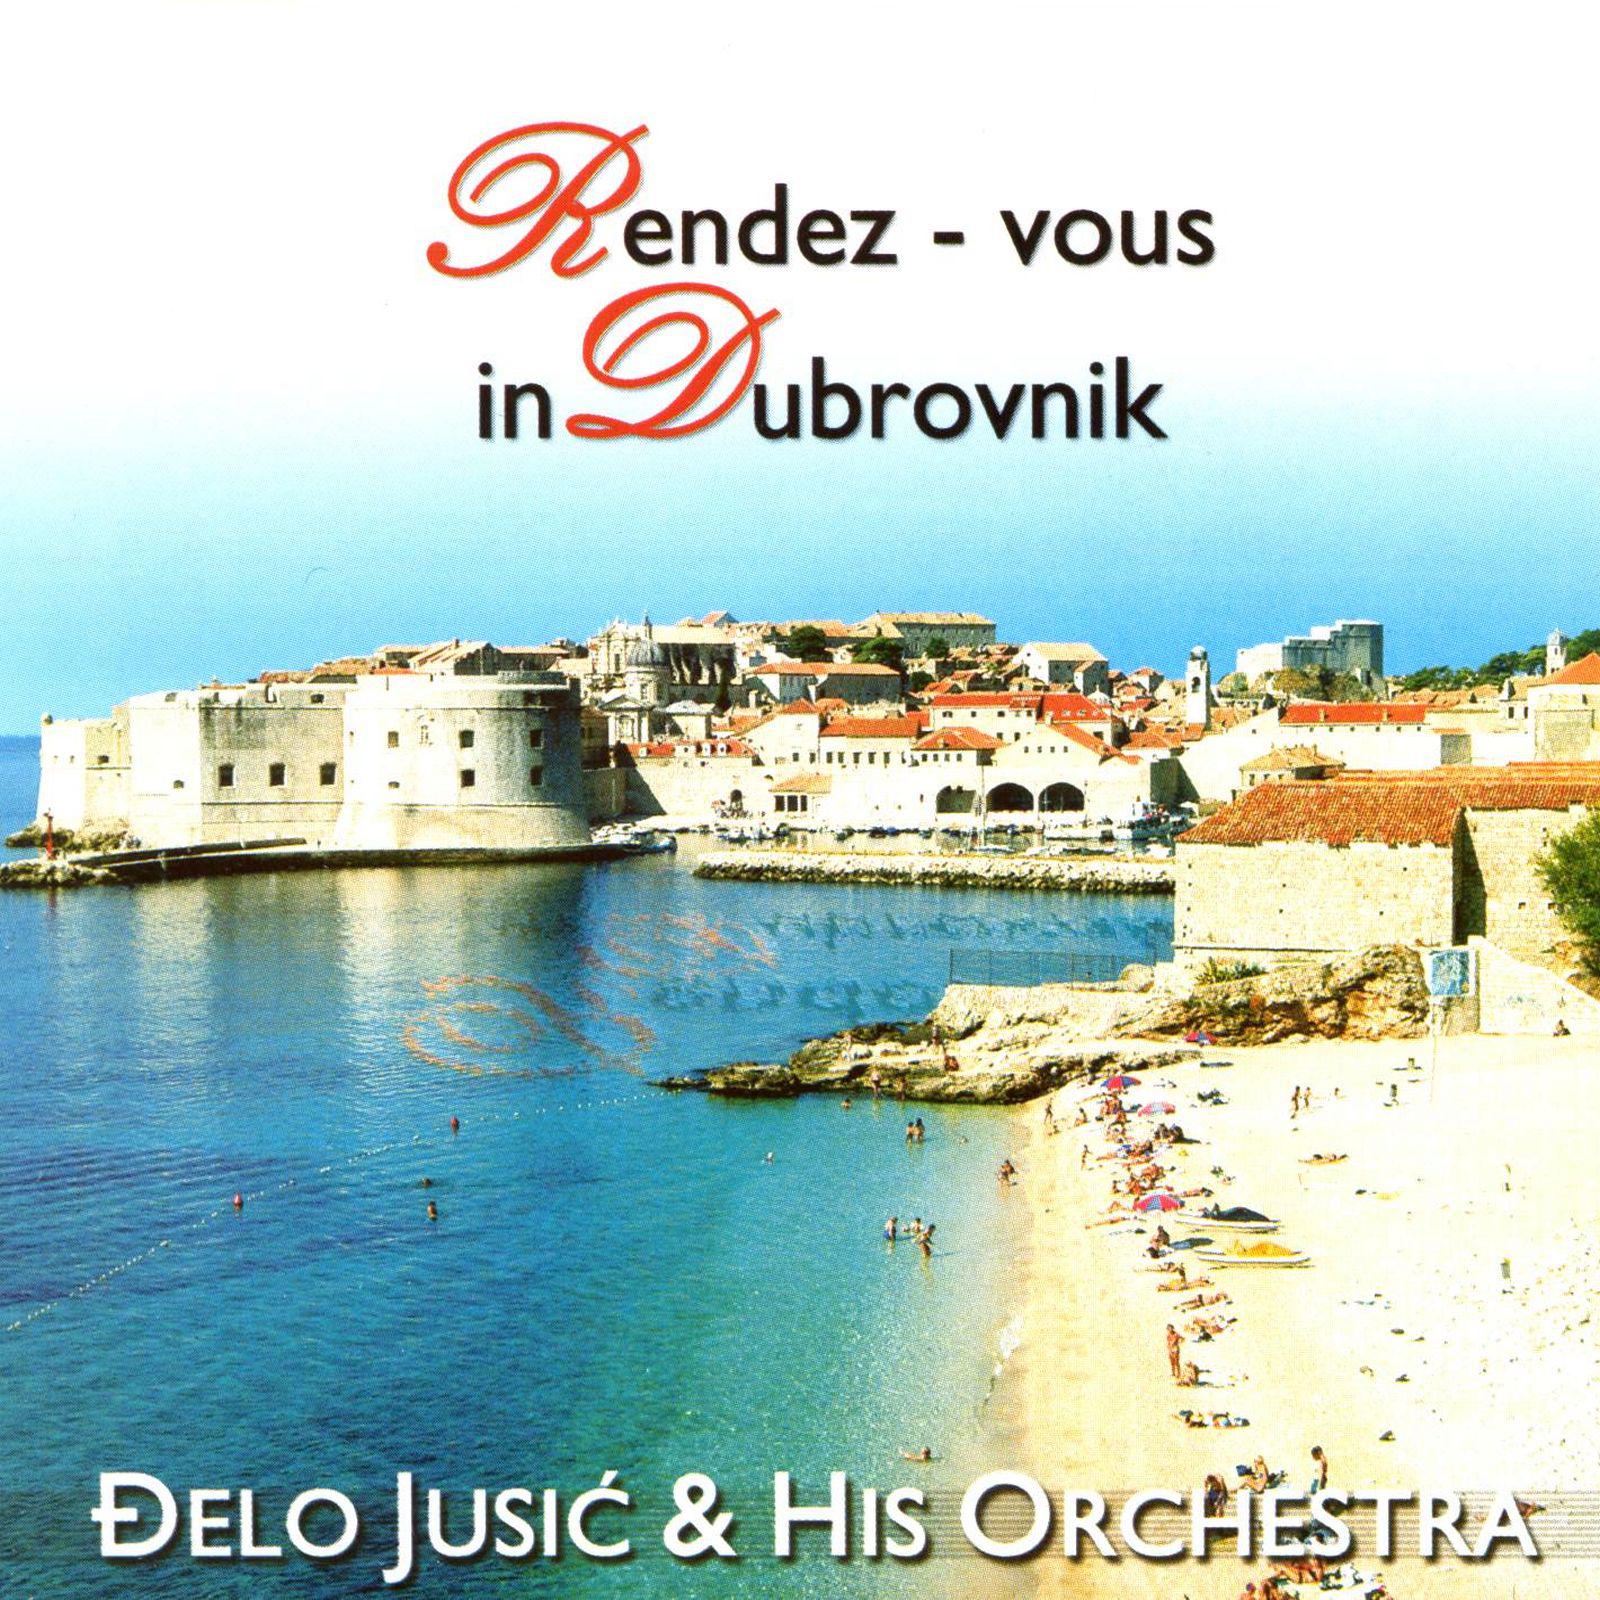 Rendez - Vous In Dubrovnik